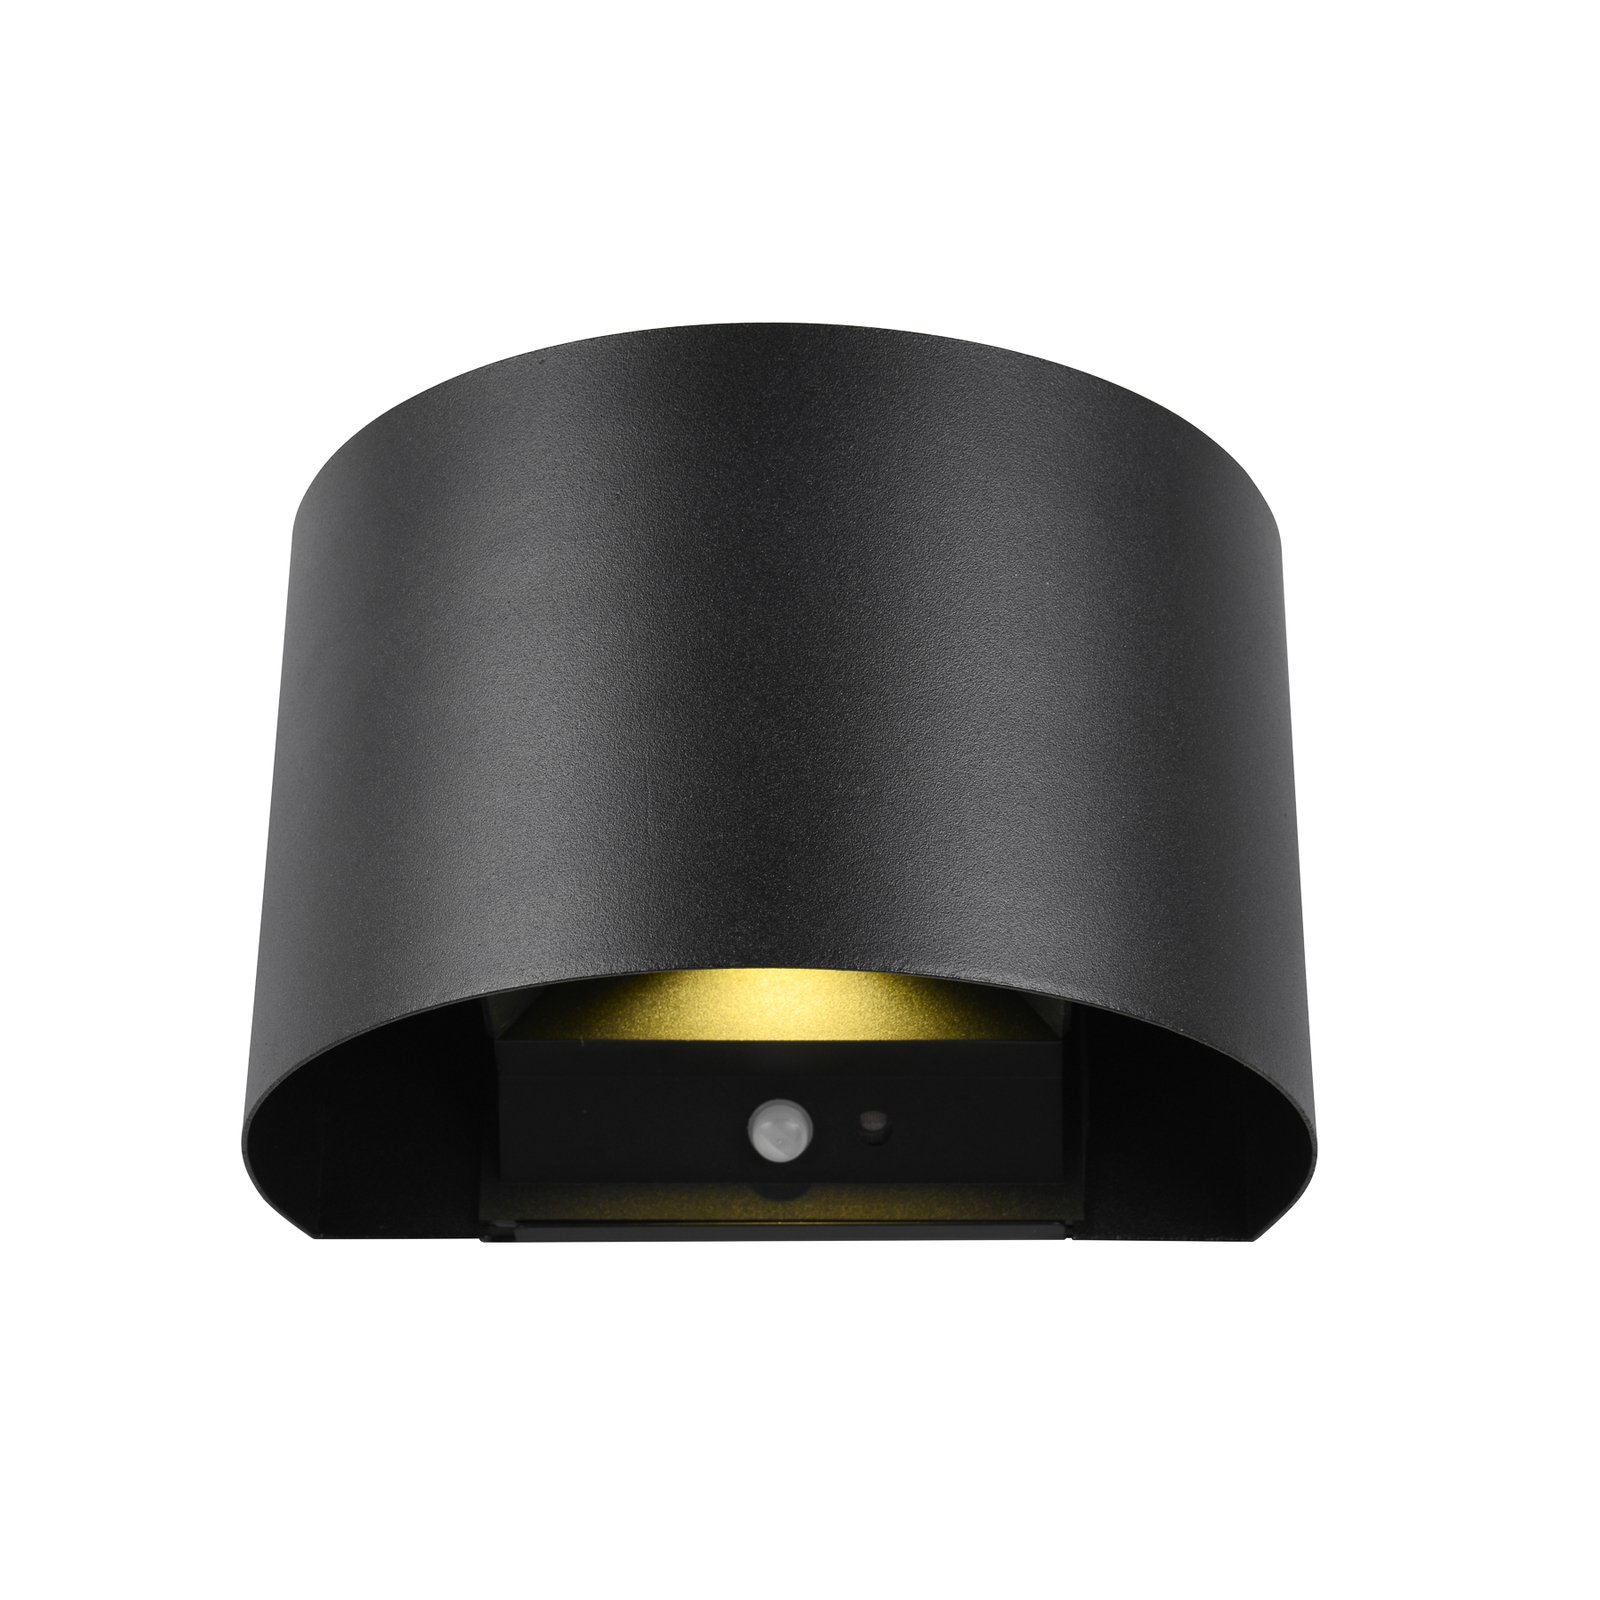 LED įkraunamas lauko sieninis šviestuvas "Talent", juodas, 16 cm pločio